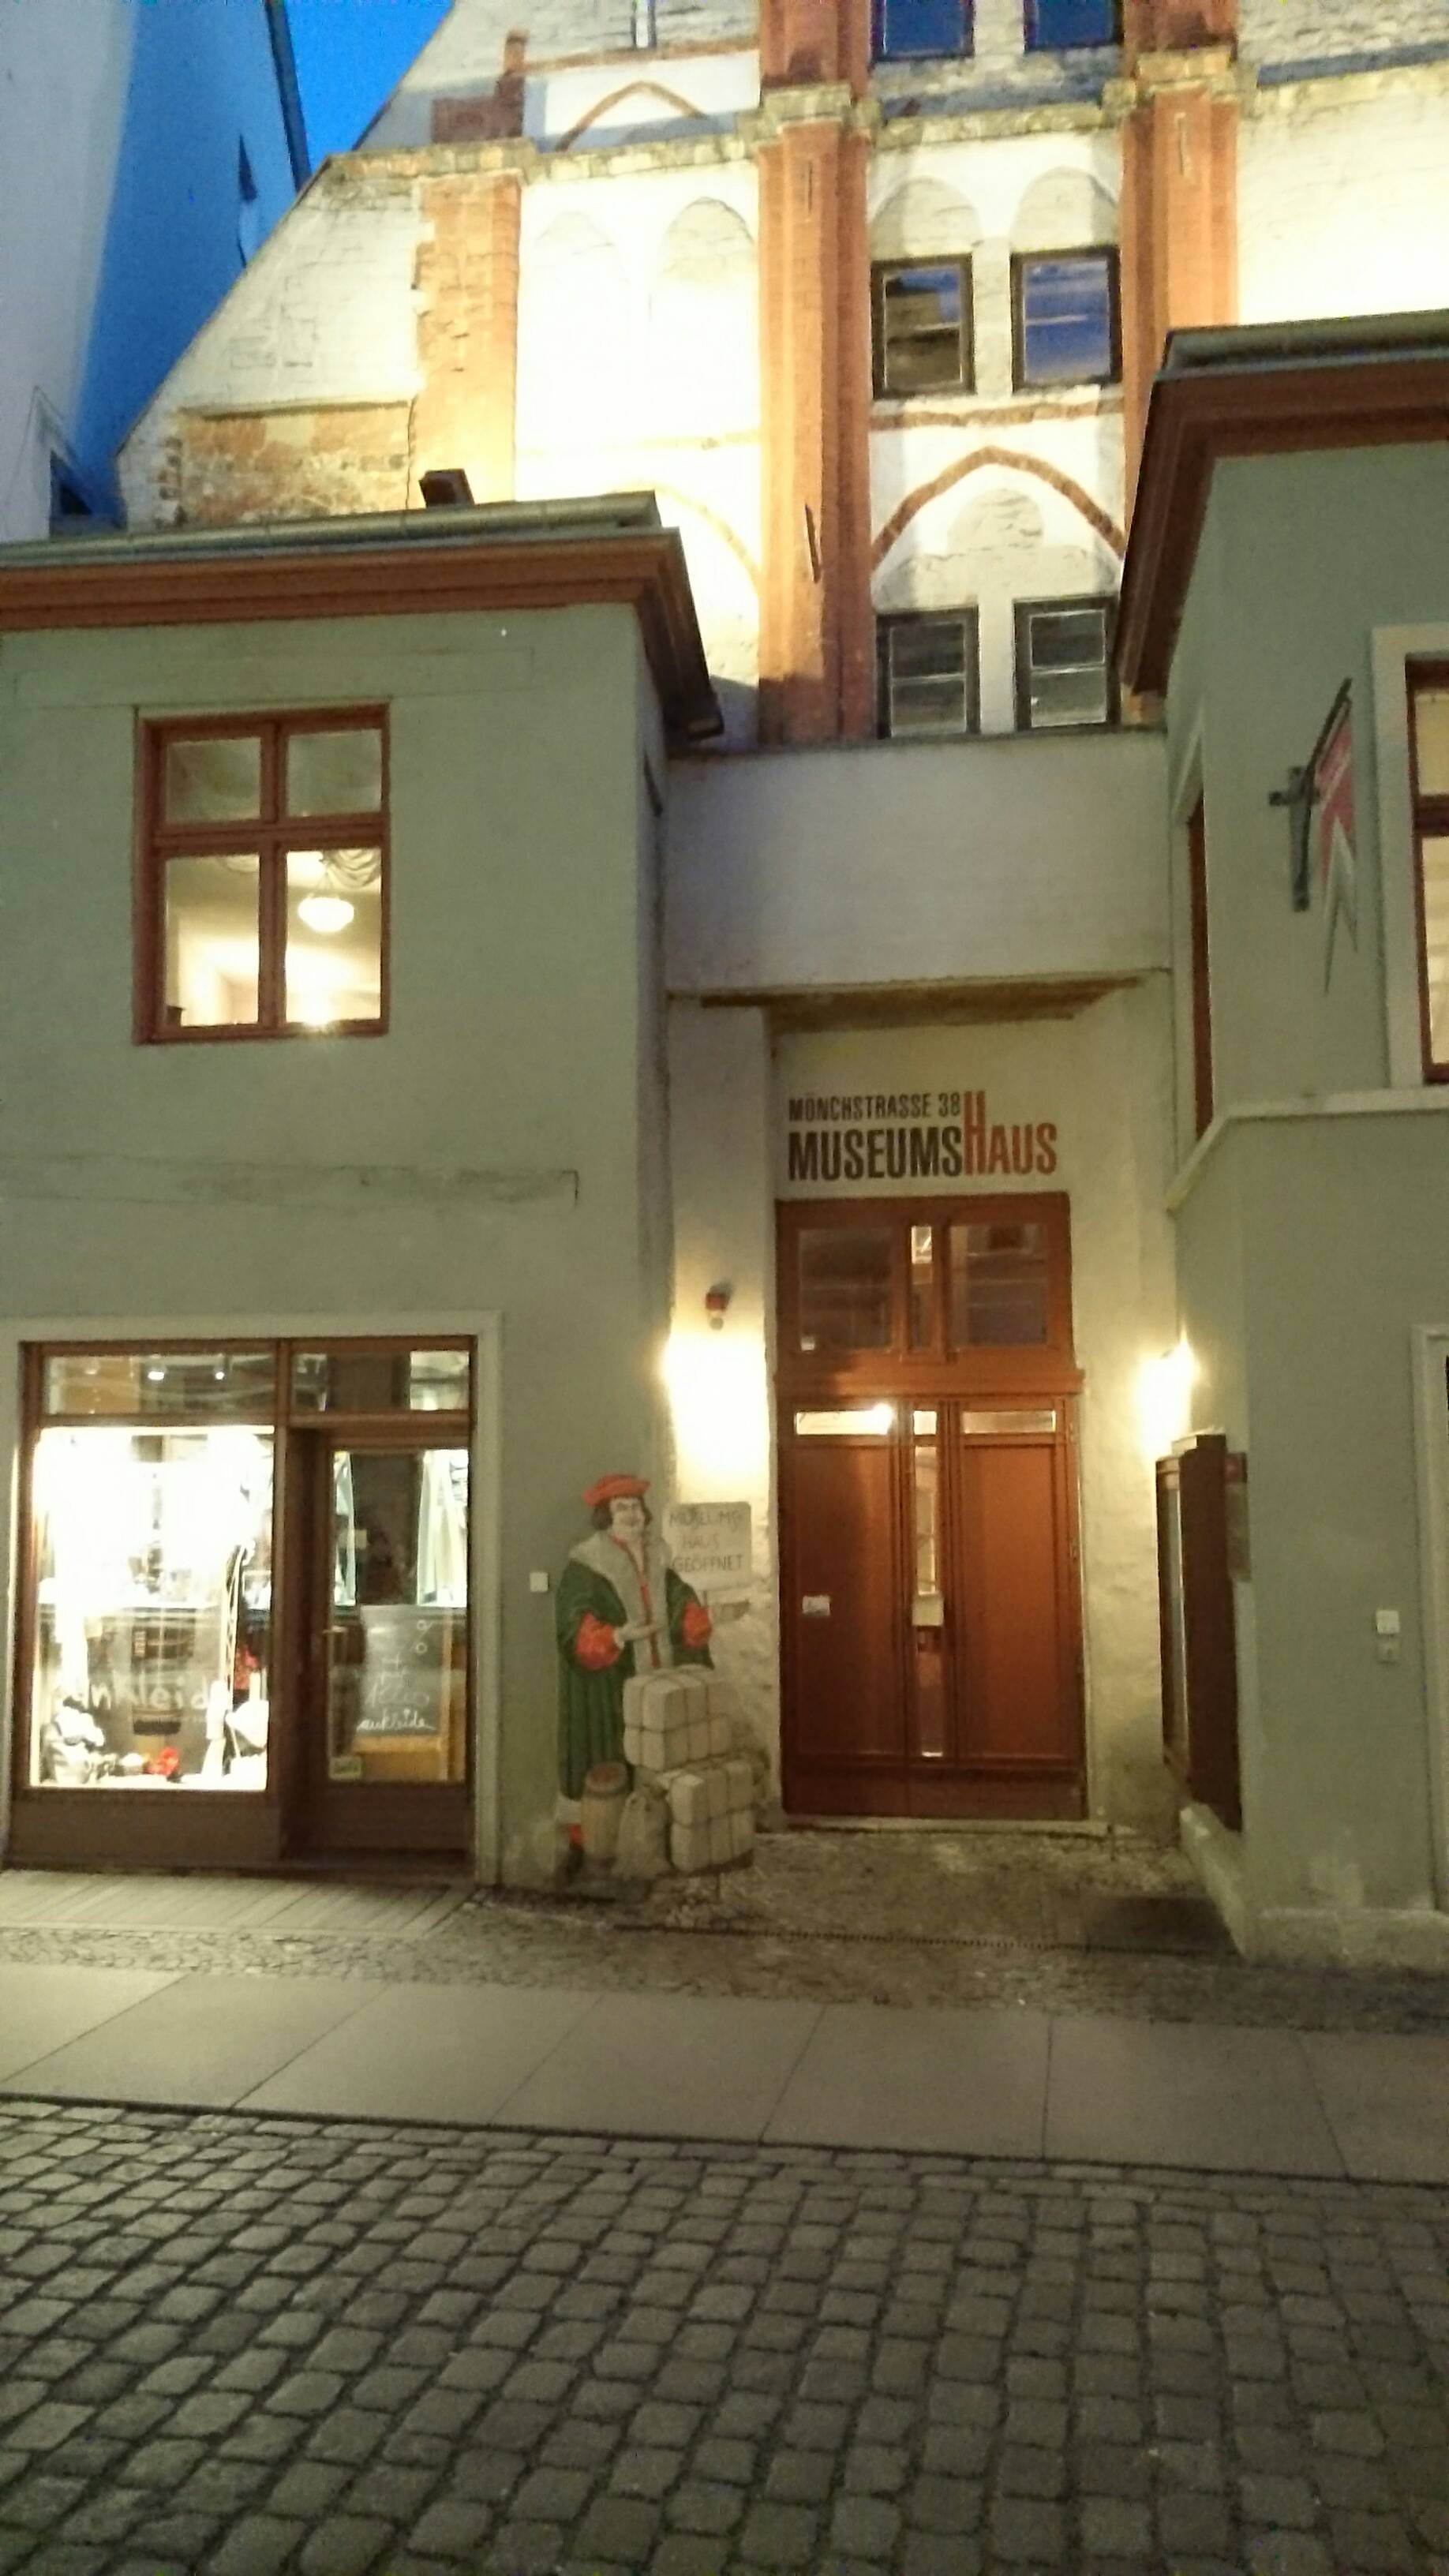 Bild 2 Kulturhistorisches Museum Museumshaus in Stralsund